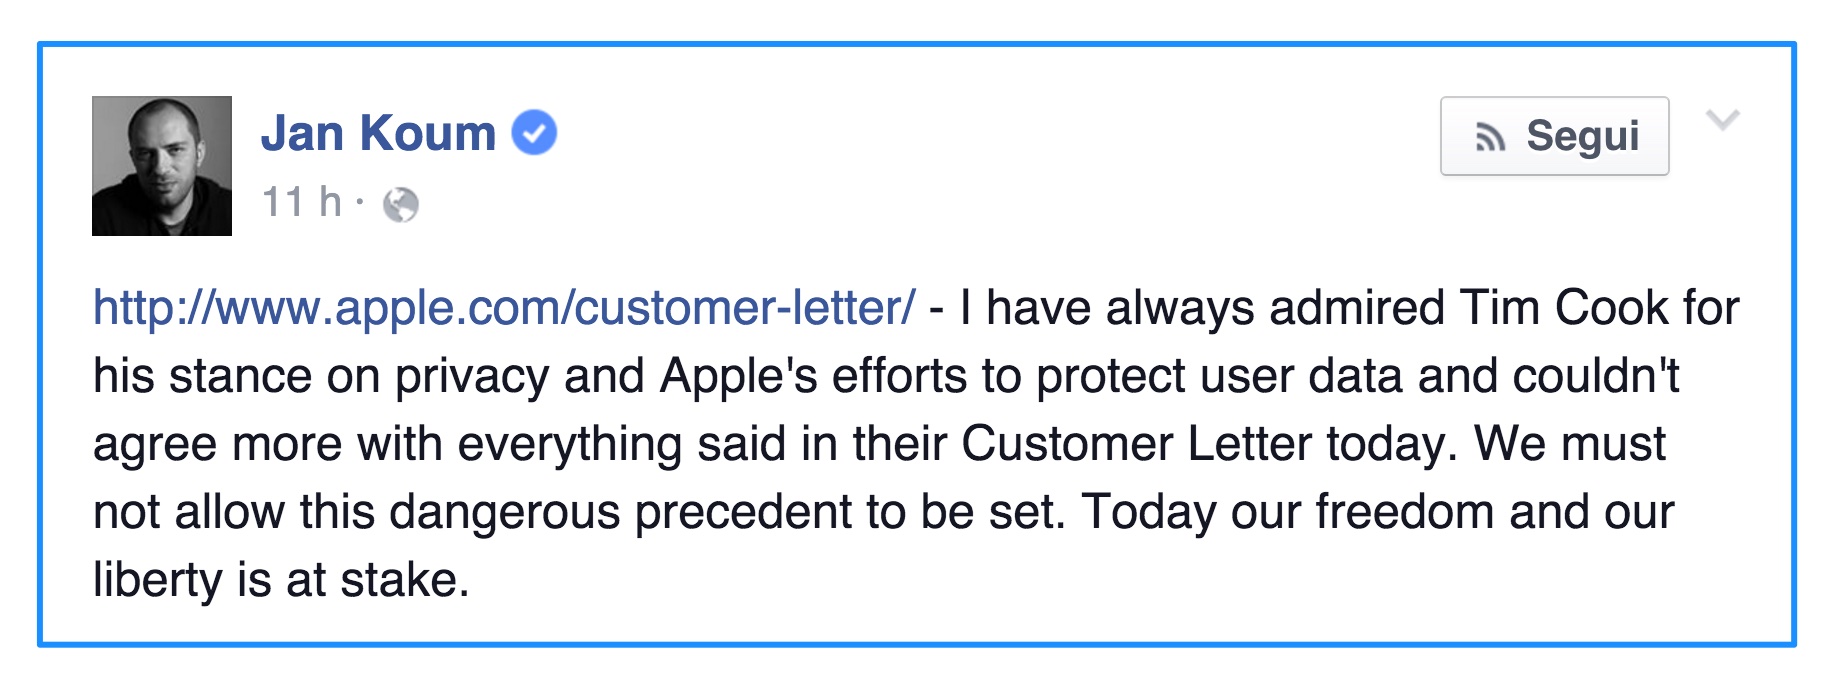 Jan_Koum_-_http___www_apple_com_customer-letter__-_I_have_always___